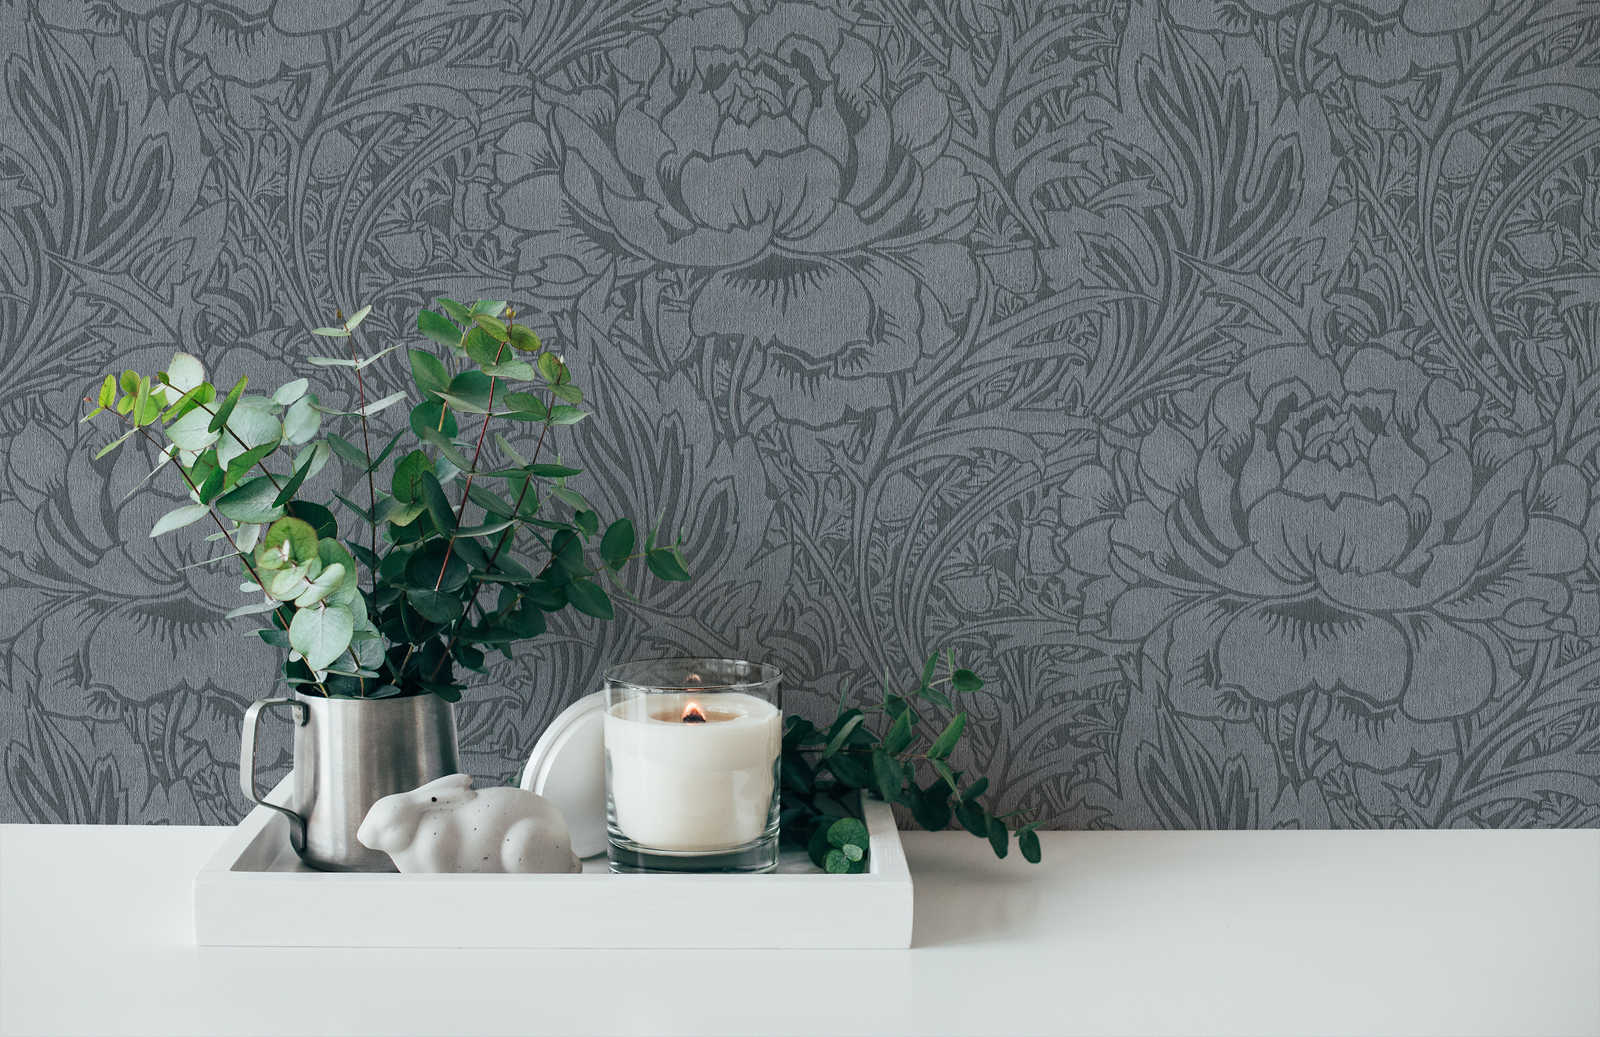             Blumentapete Grau mit floralem Jugendstil Design
        